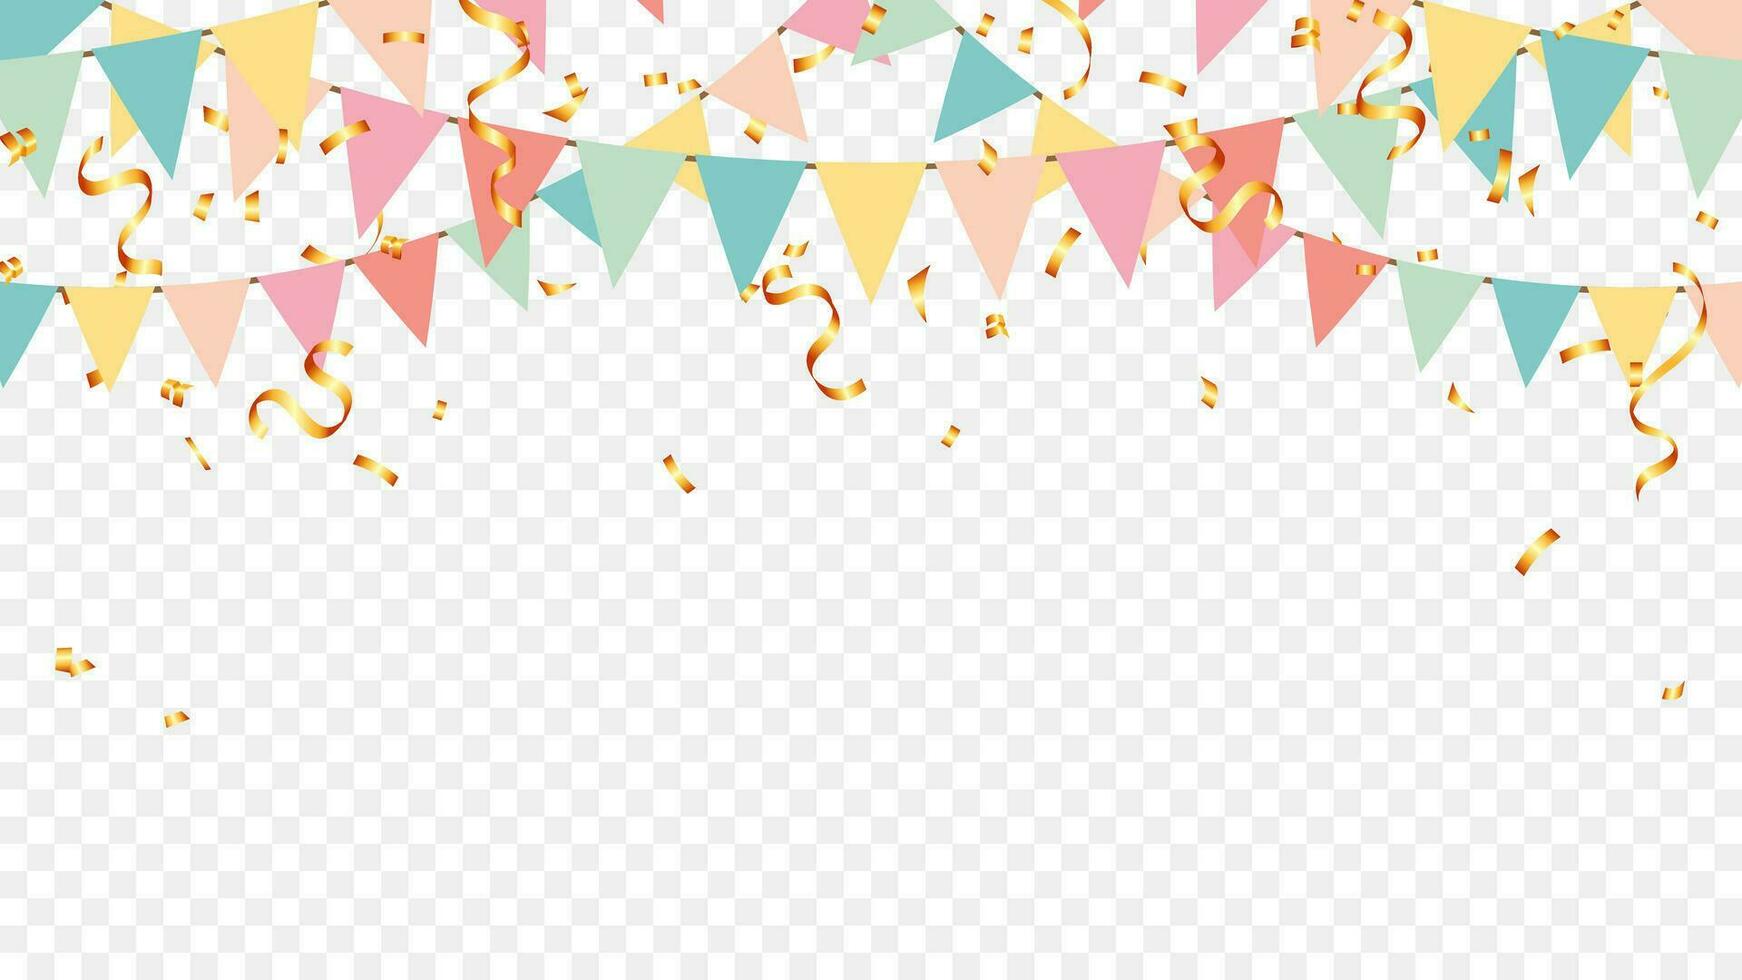 Party bunt Pastell- Flaggen und Gold Konfetti fallen auf transparent Hintergrund. Feier, Geburtstag, festa, Karneval, Jubiläen und Urlaub vektor